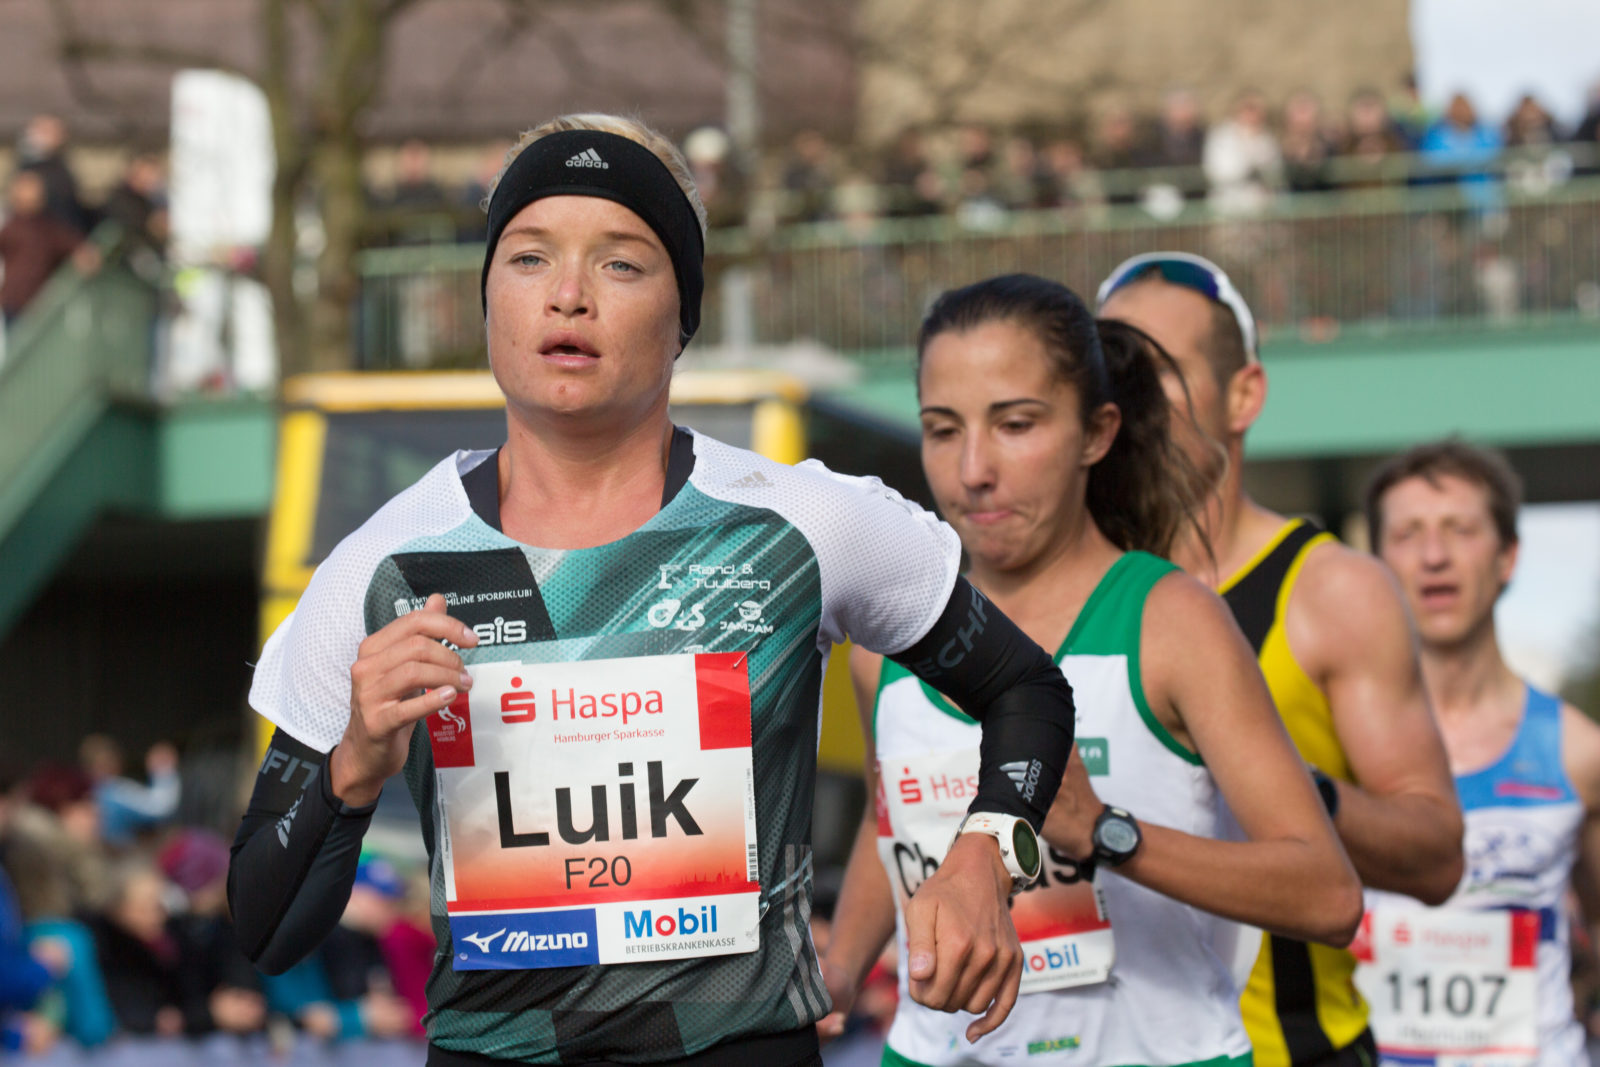 Im Trio nach Rio – Luik Drillinge für Marathon nominiert